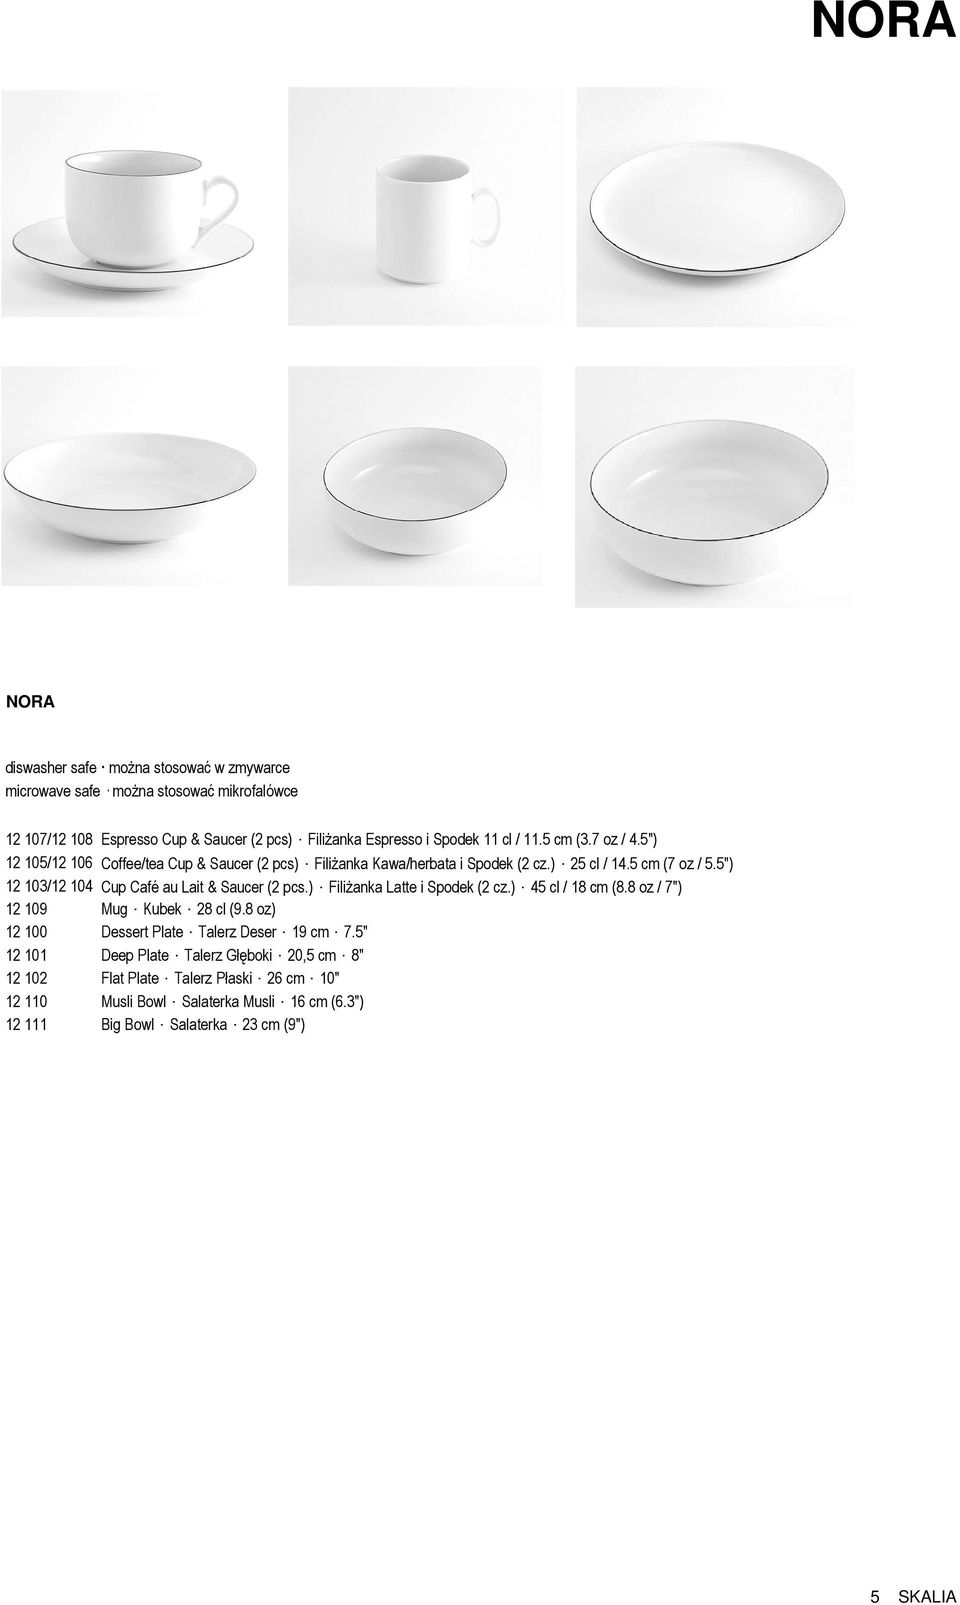 5") 12 103/12 104 Cup Café au Lait & Saucer (2 pcs.) FiliŜanka Latte i Spodek (2 cz.) 45 cl / 18 cm (8.8 oz / 7") 12 109 Mug Kubek 28 cl (9.